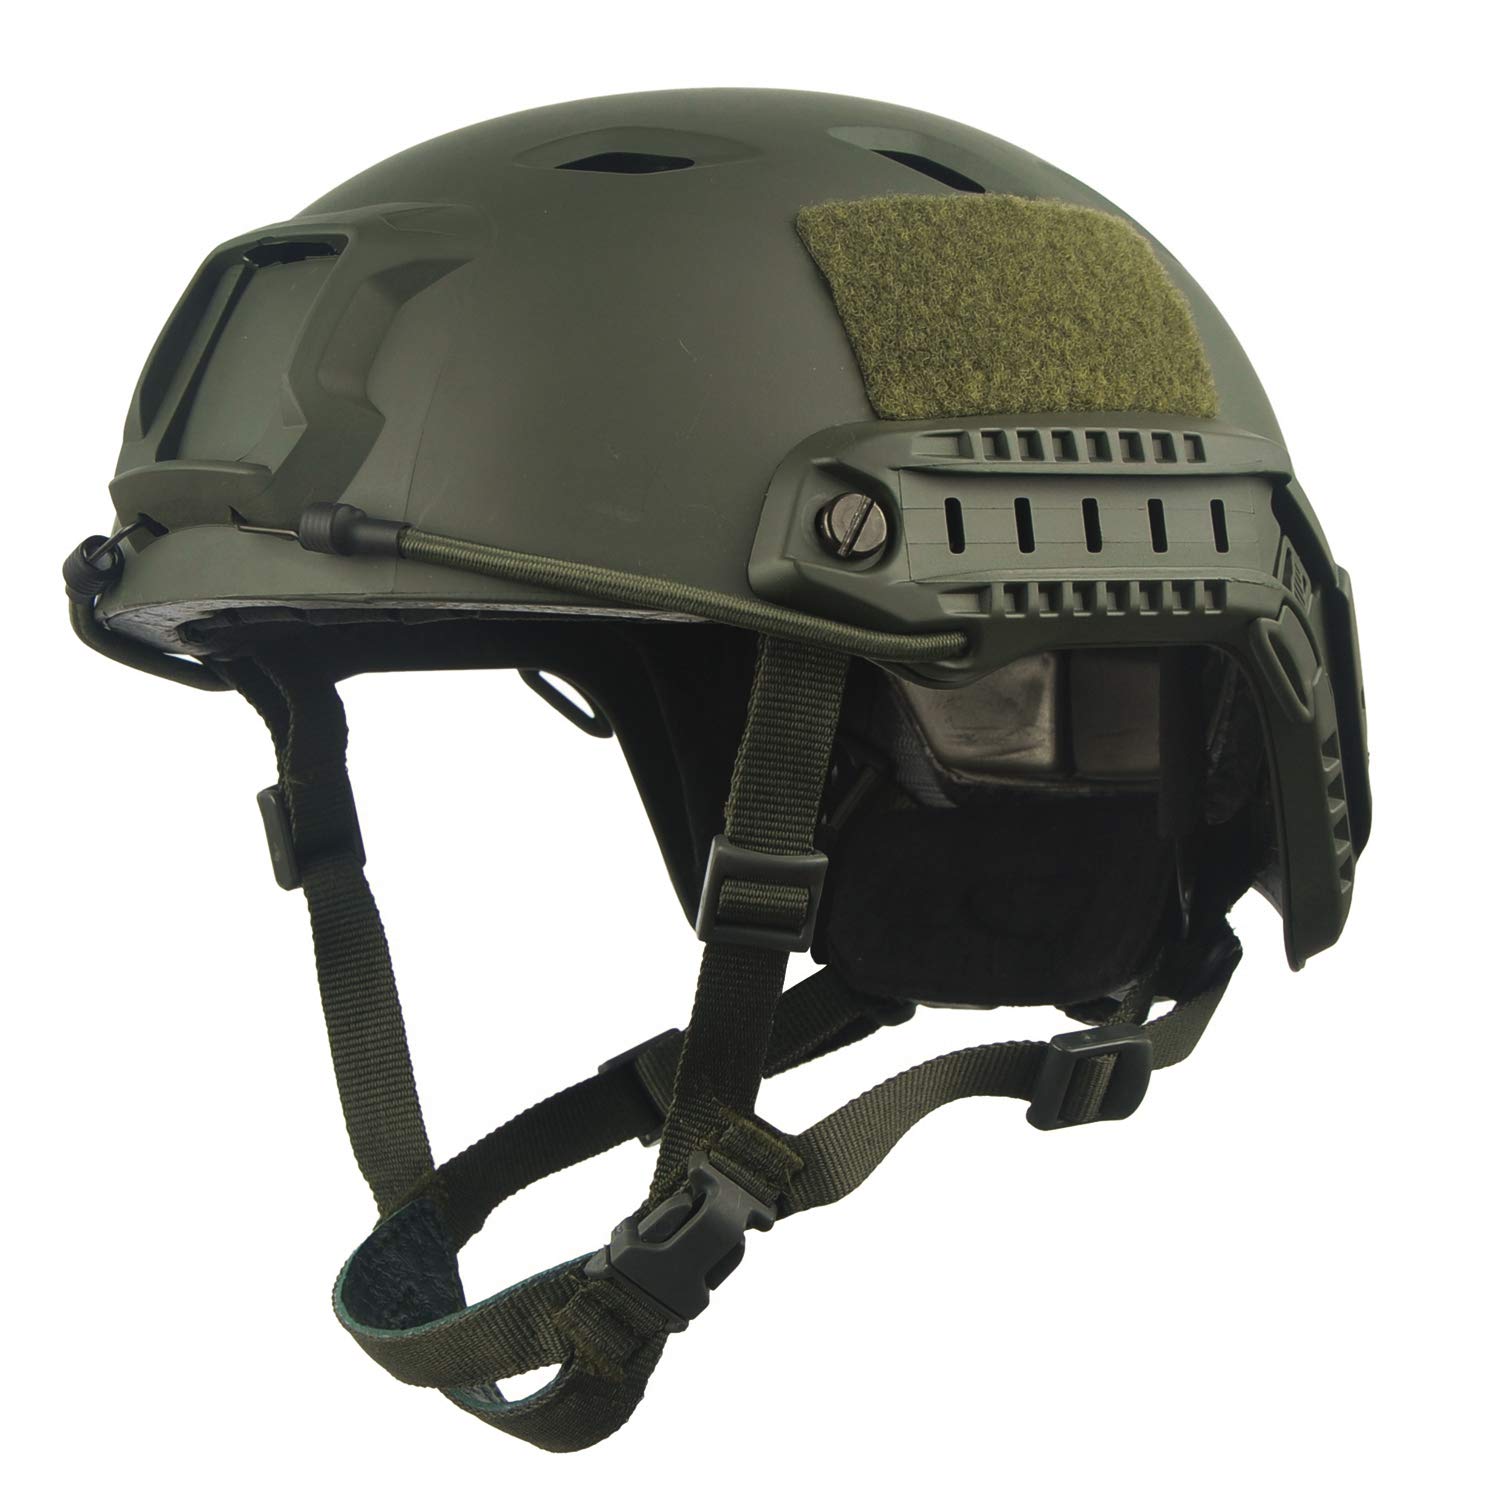 LOOGU Airsoft Helm Fast BJ Militärhelm Ops Core Helm mit Kopftuch Taktischer Schutzhelm für Paintball Freizeit Outdoor Tactical Jagd Top Grün Helmet